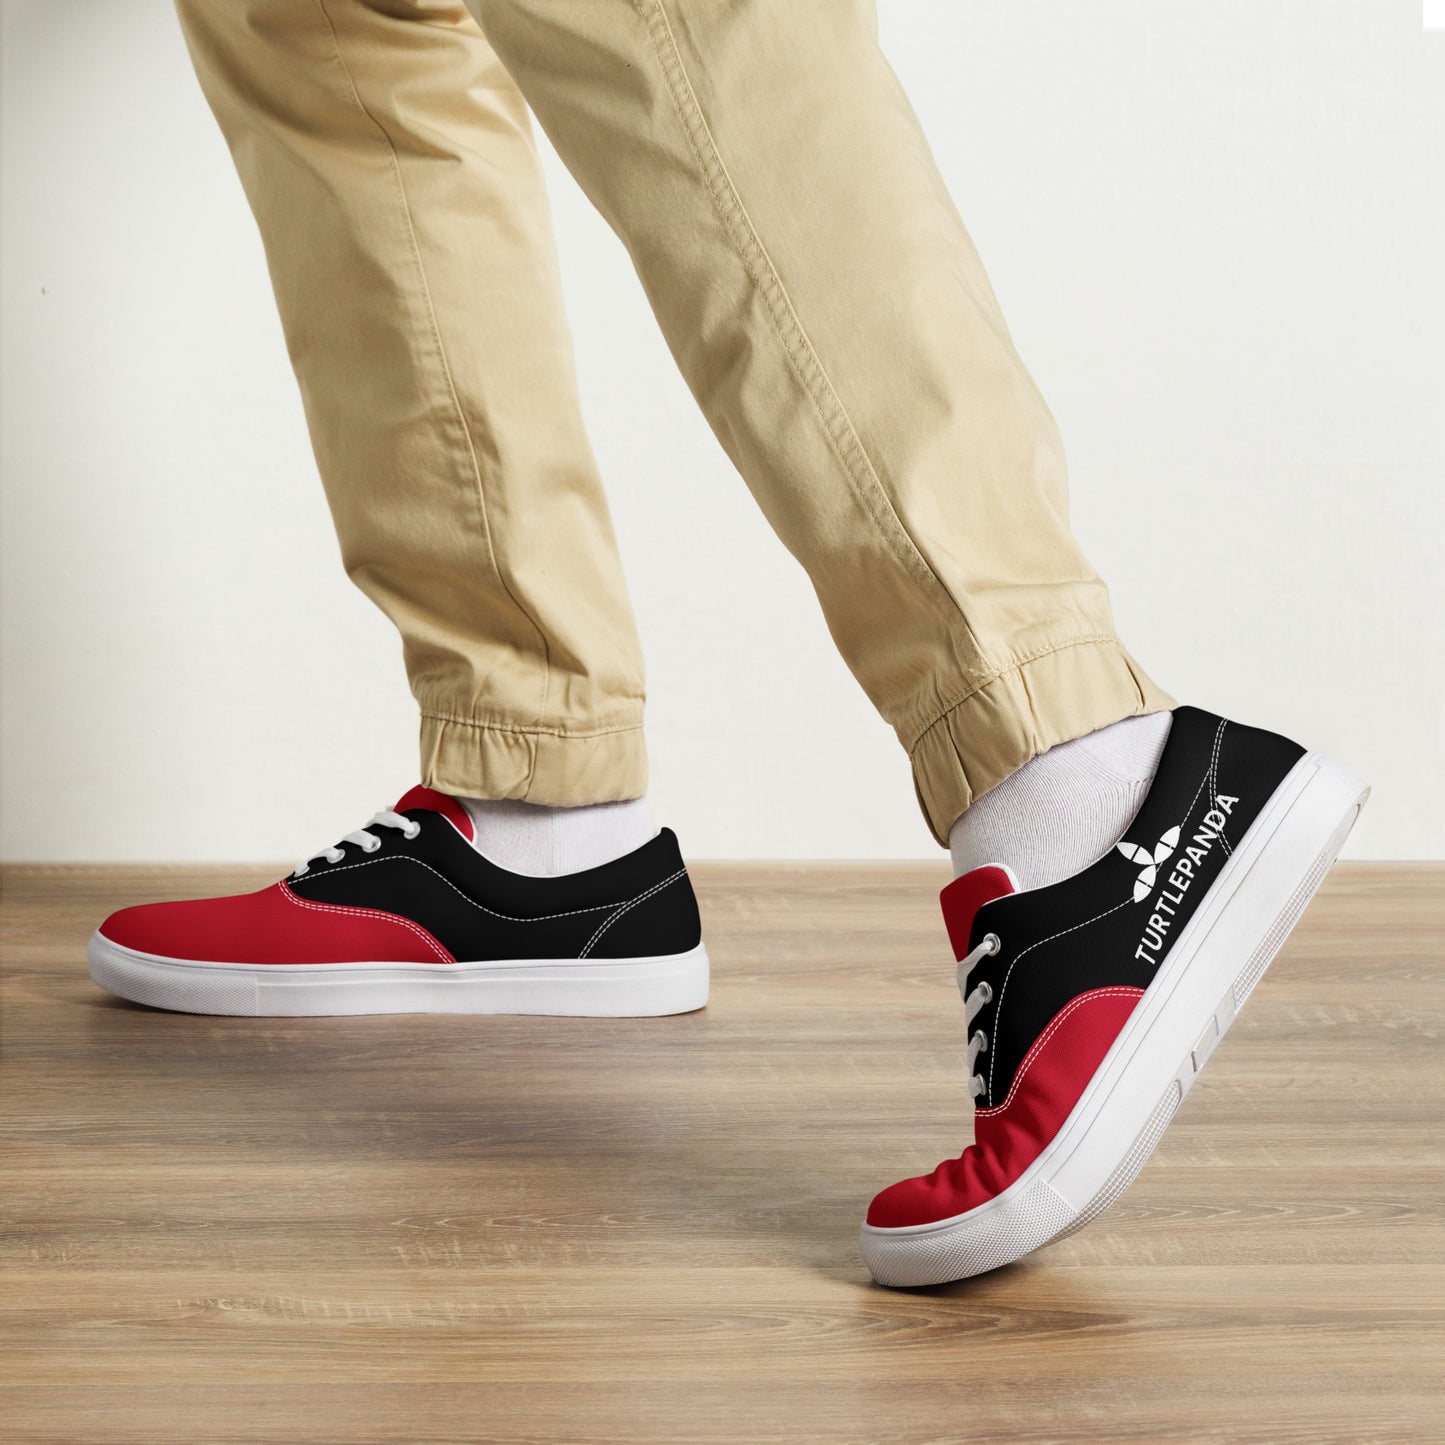 sneakers -red-black